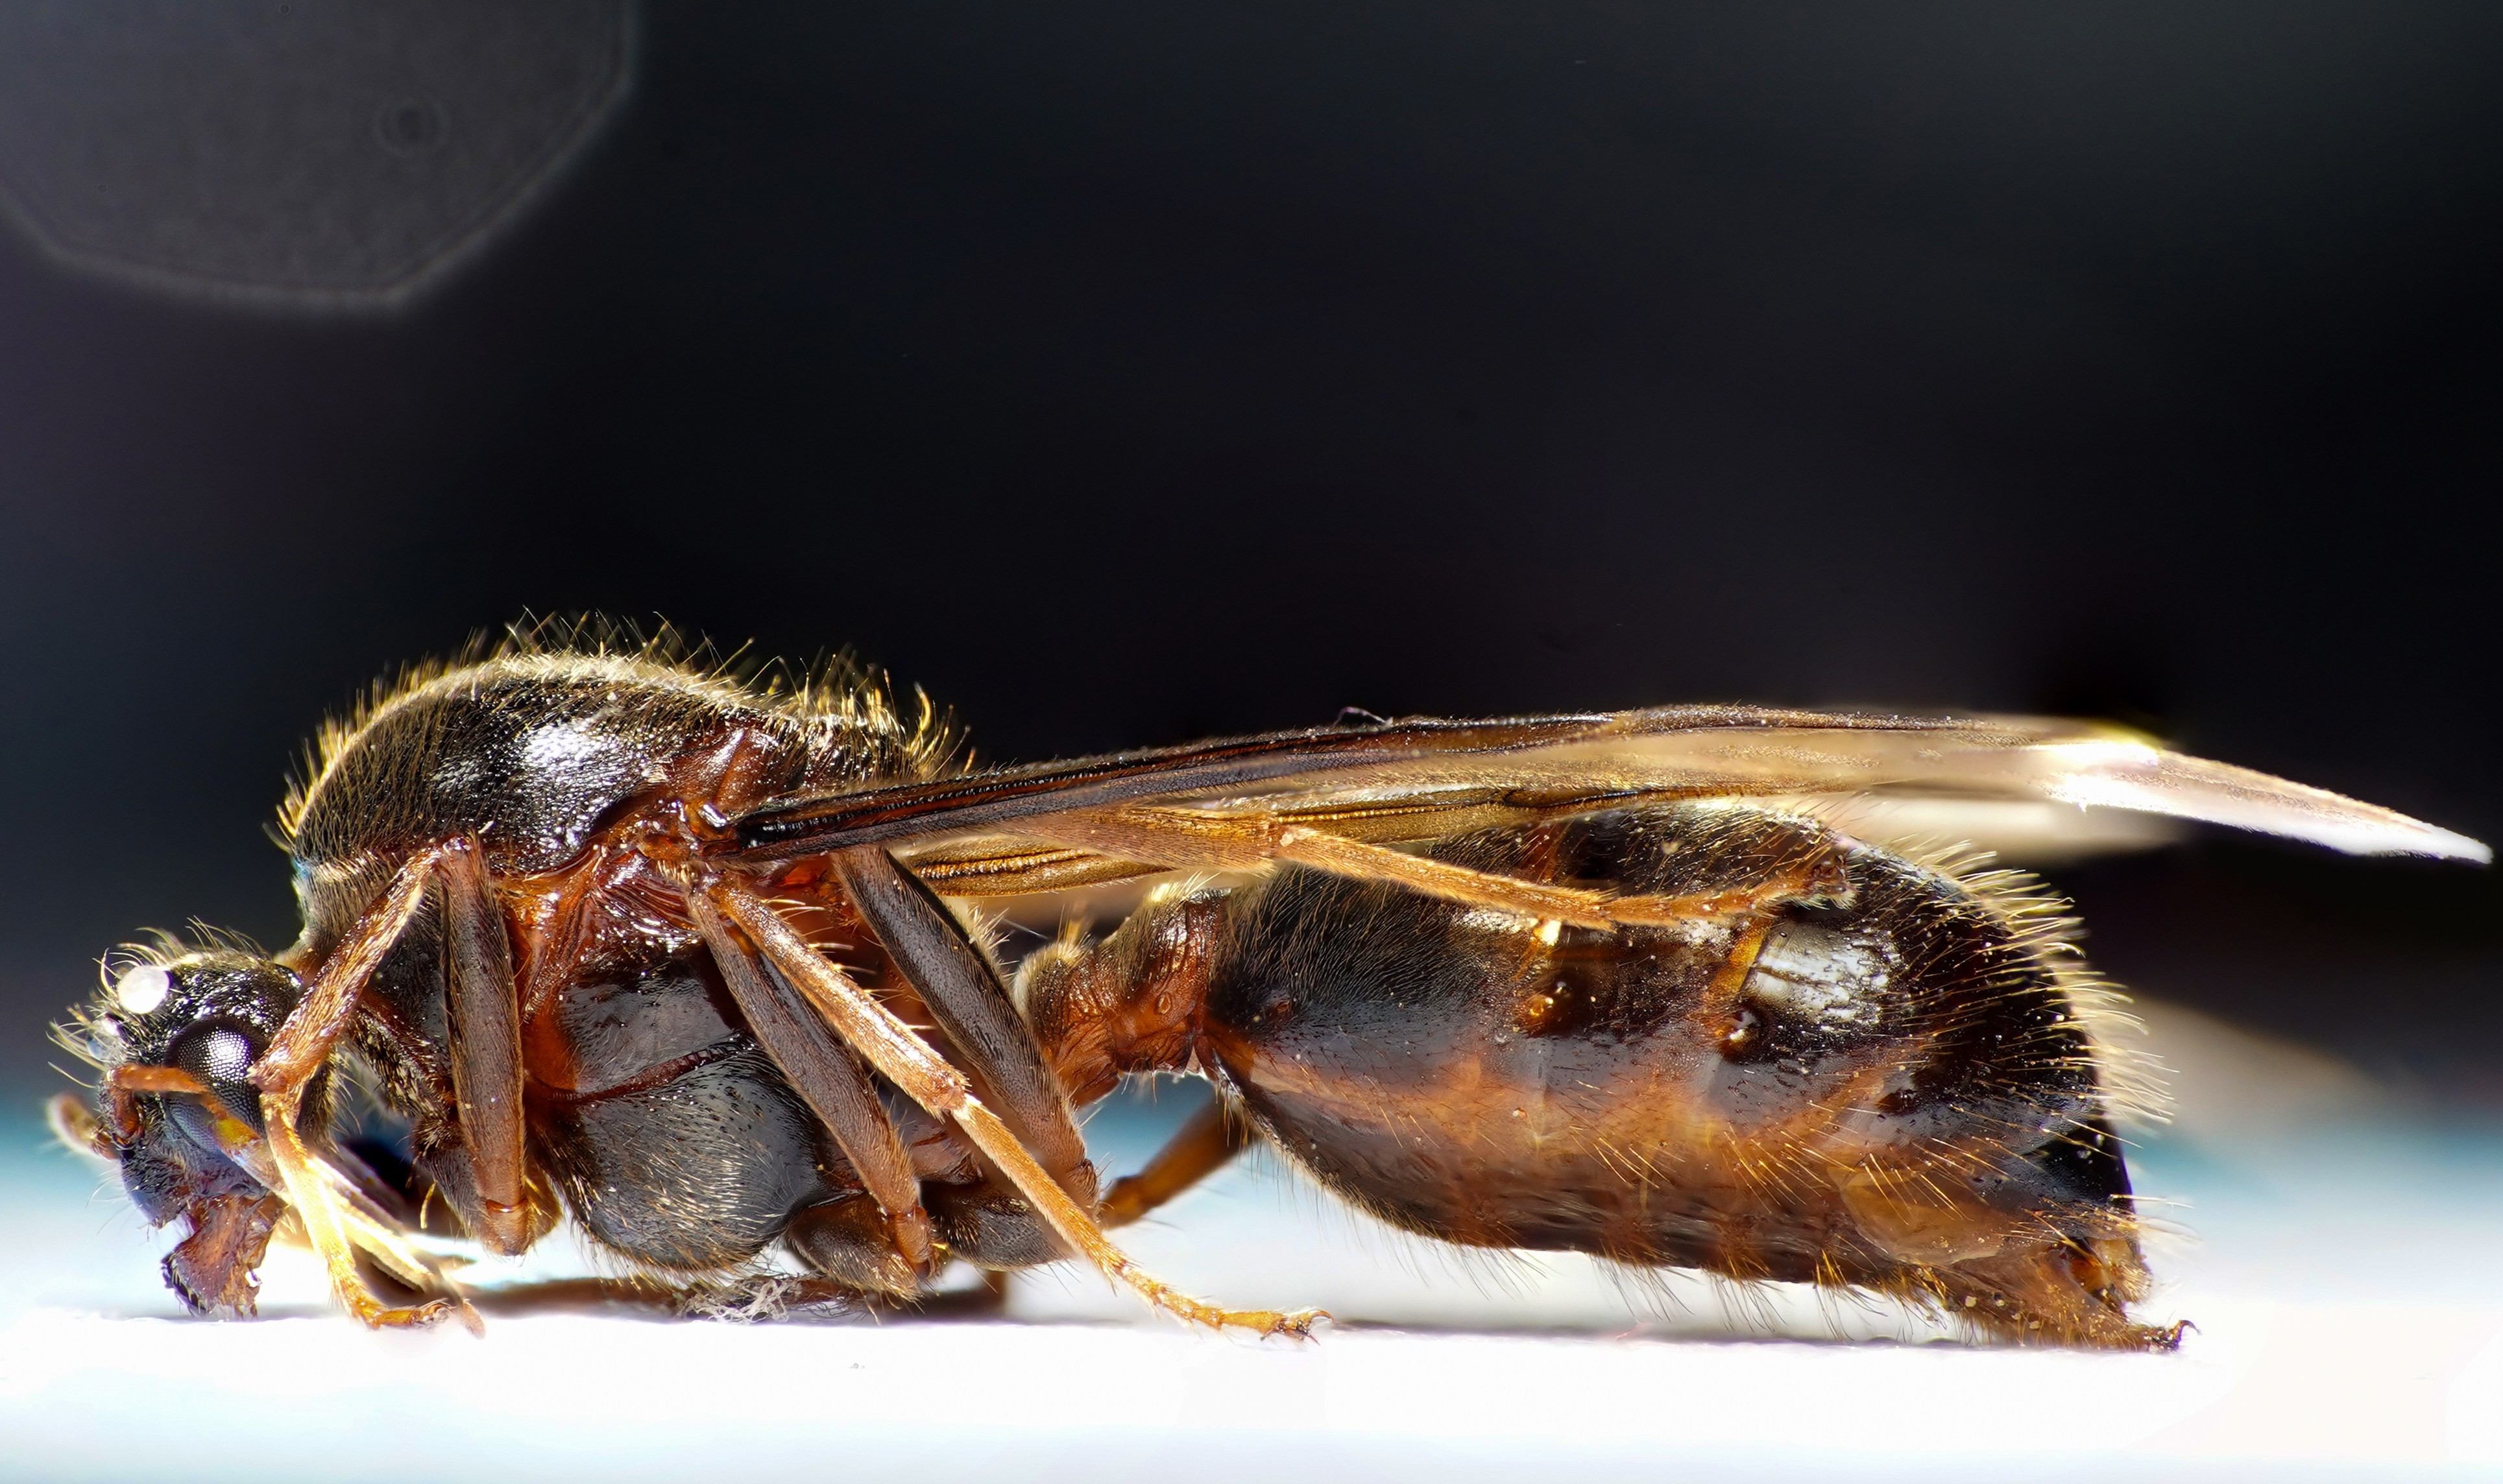 A Super Close-up of a Wasp